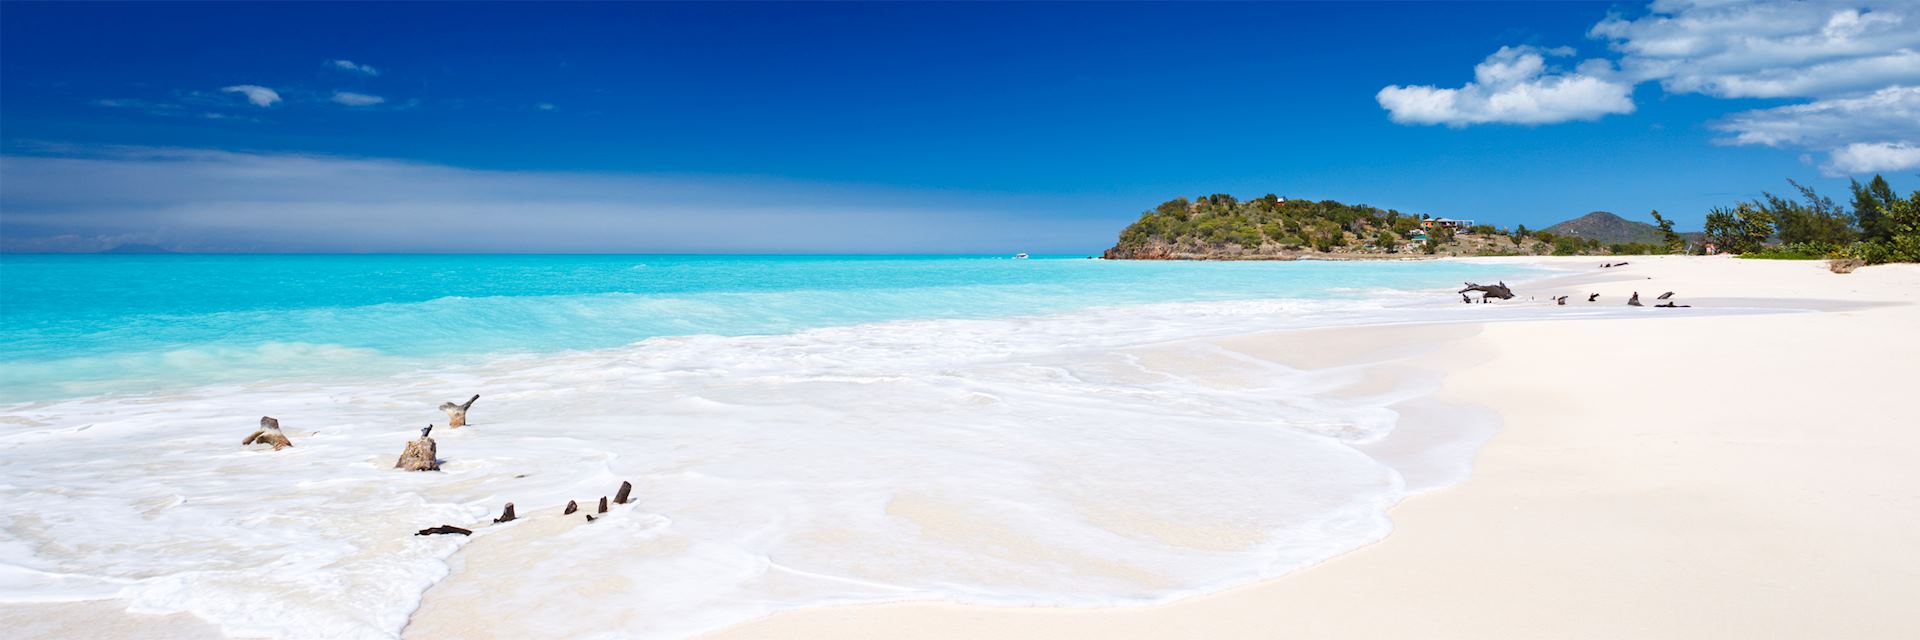 Deserted beach on Antigua